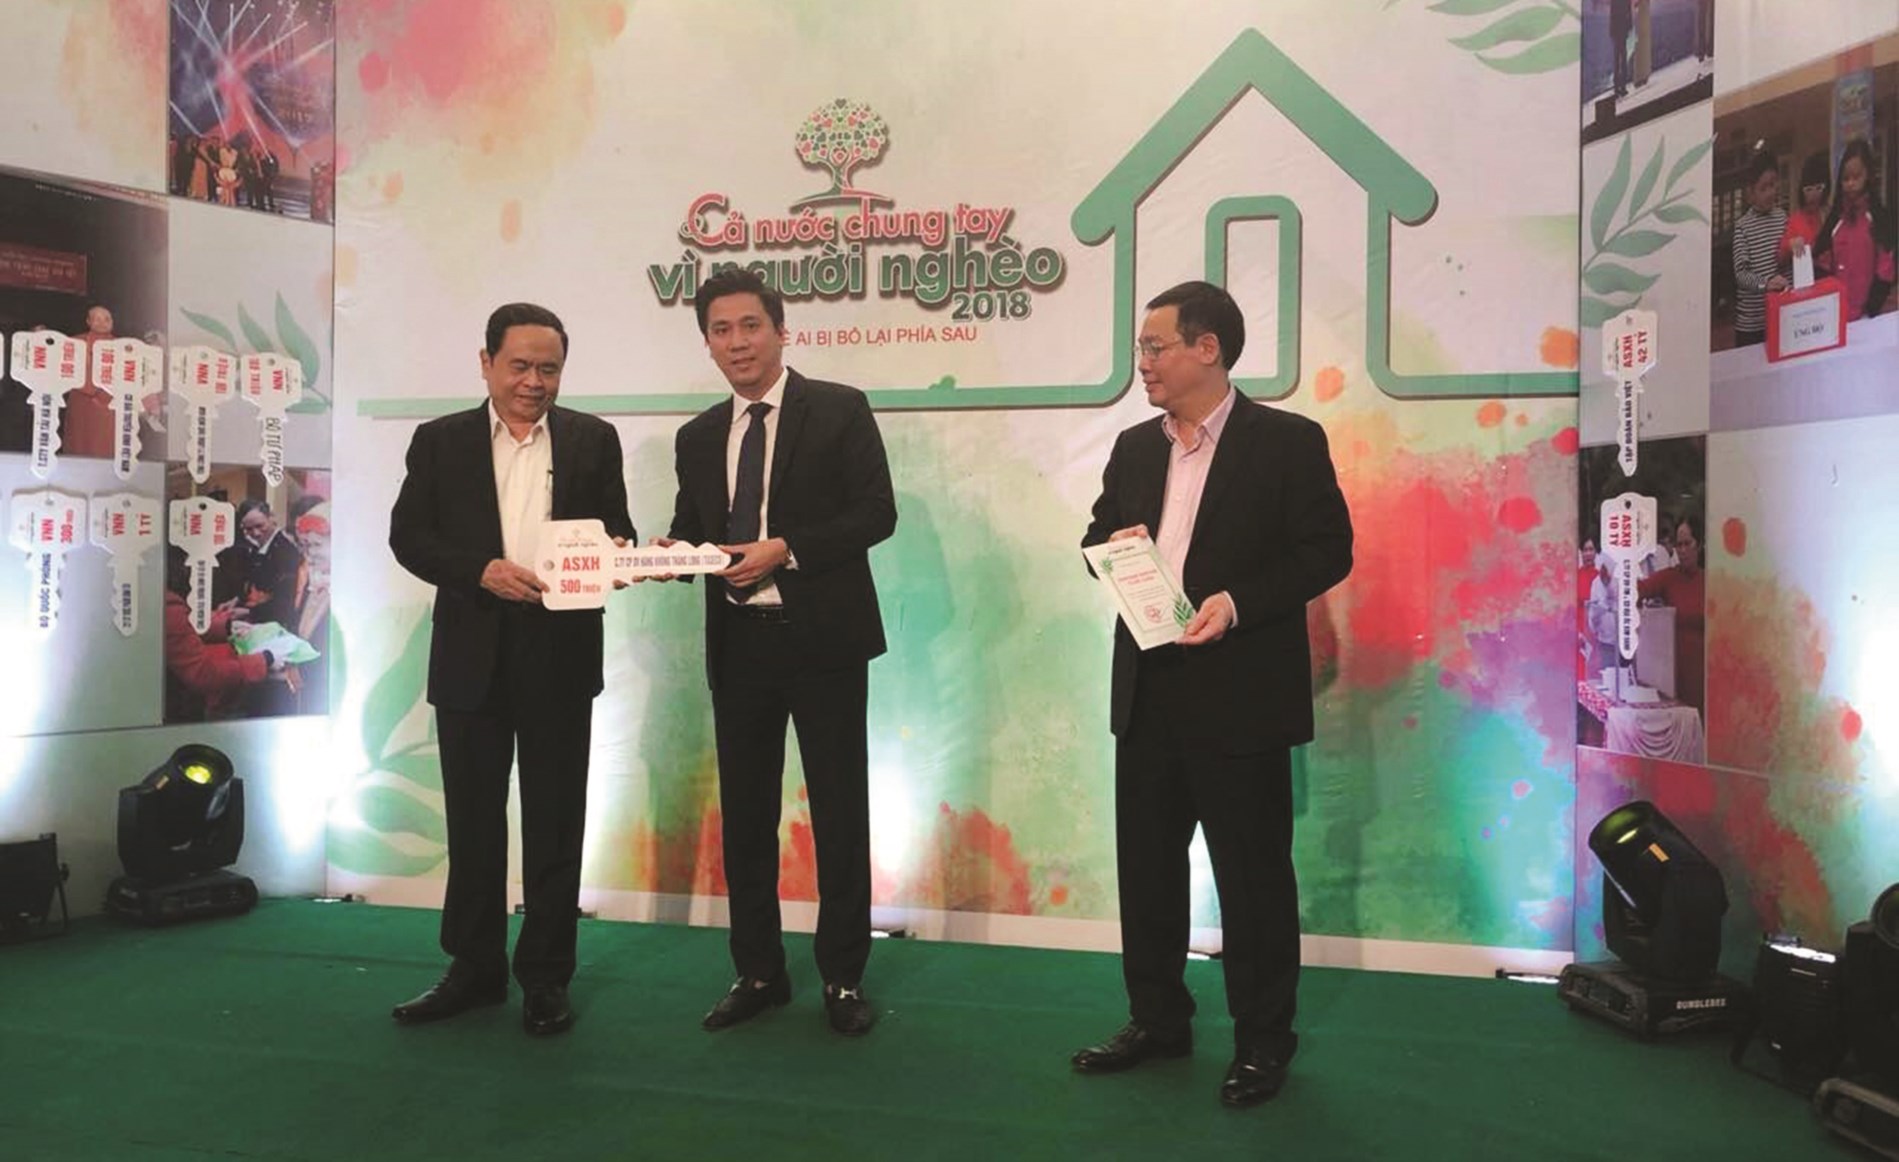 Ông Đỗ Việt Thanh (đứng giữa), Phó Tổng Giám đốc Công ty TASECO trao bảng tiền tượng trưng cho Ban Tổ chức Chương trình ‘’Cả nước chung tay vì người nghèo 2018”.